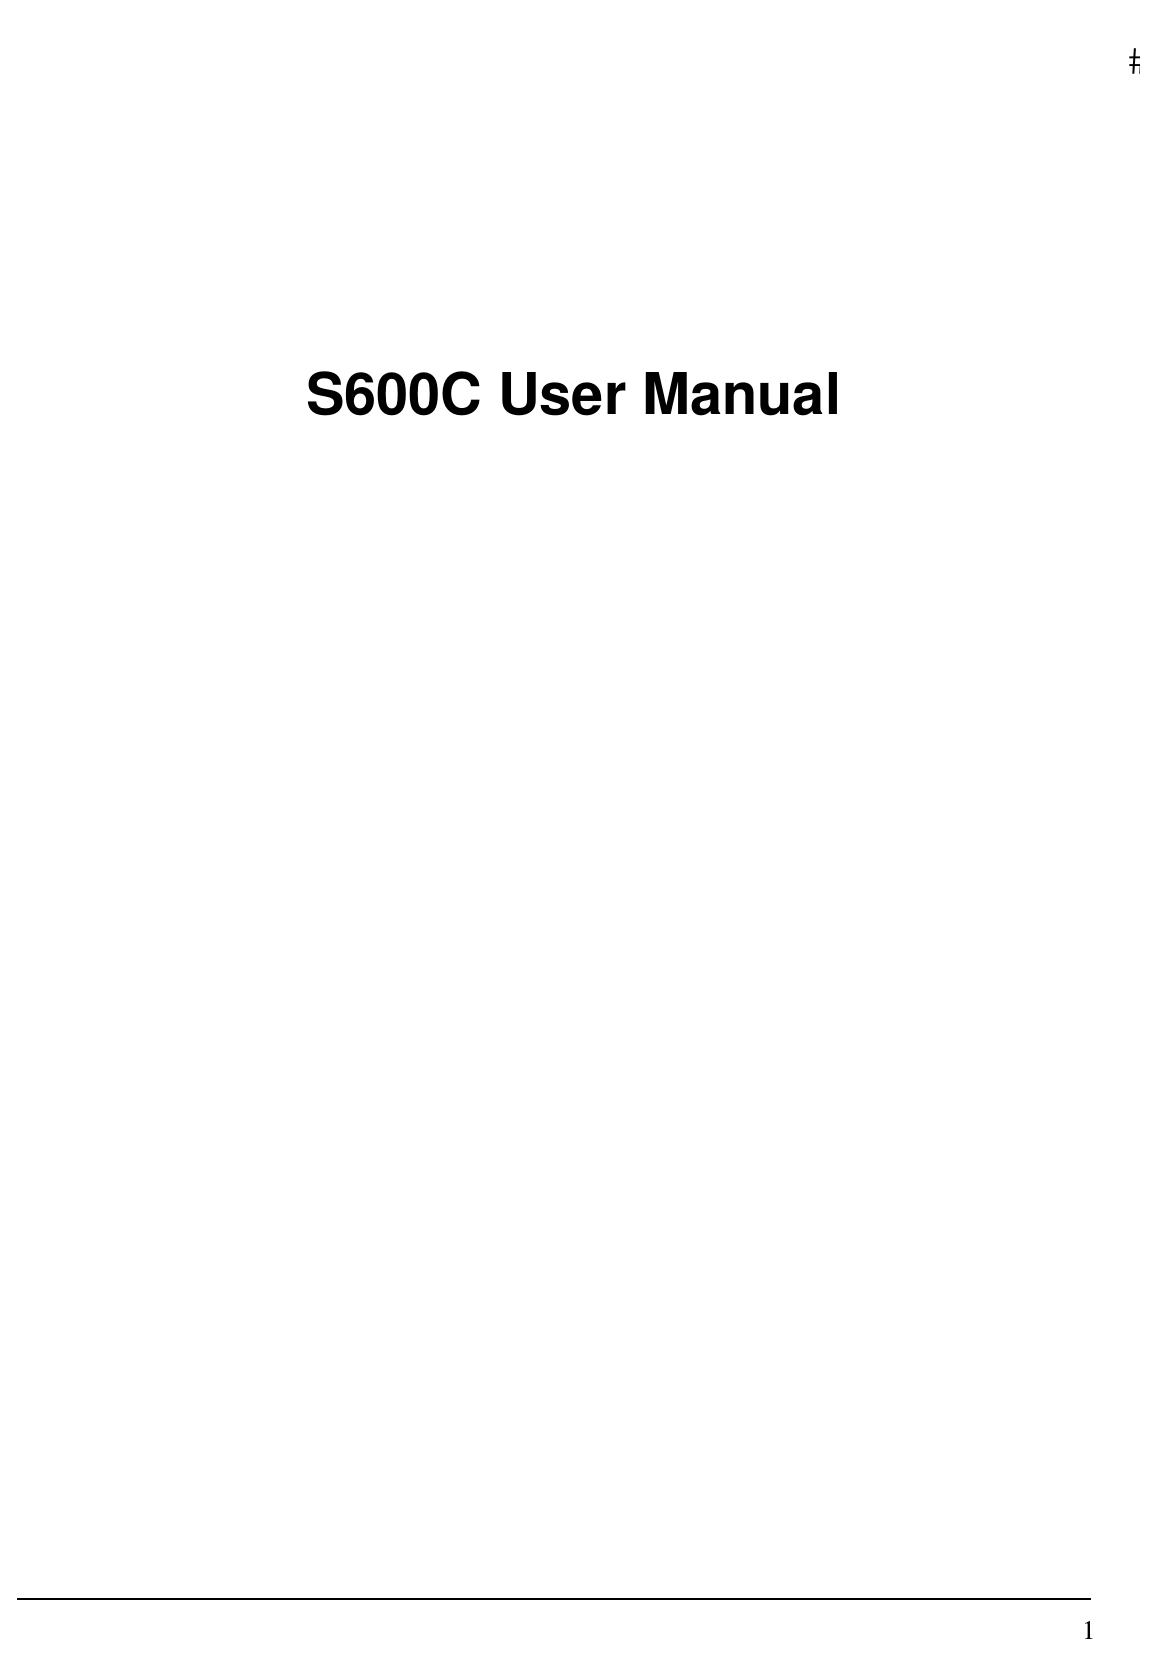   1   S600C User Manual                           